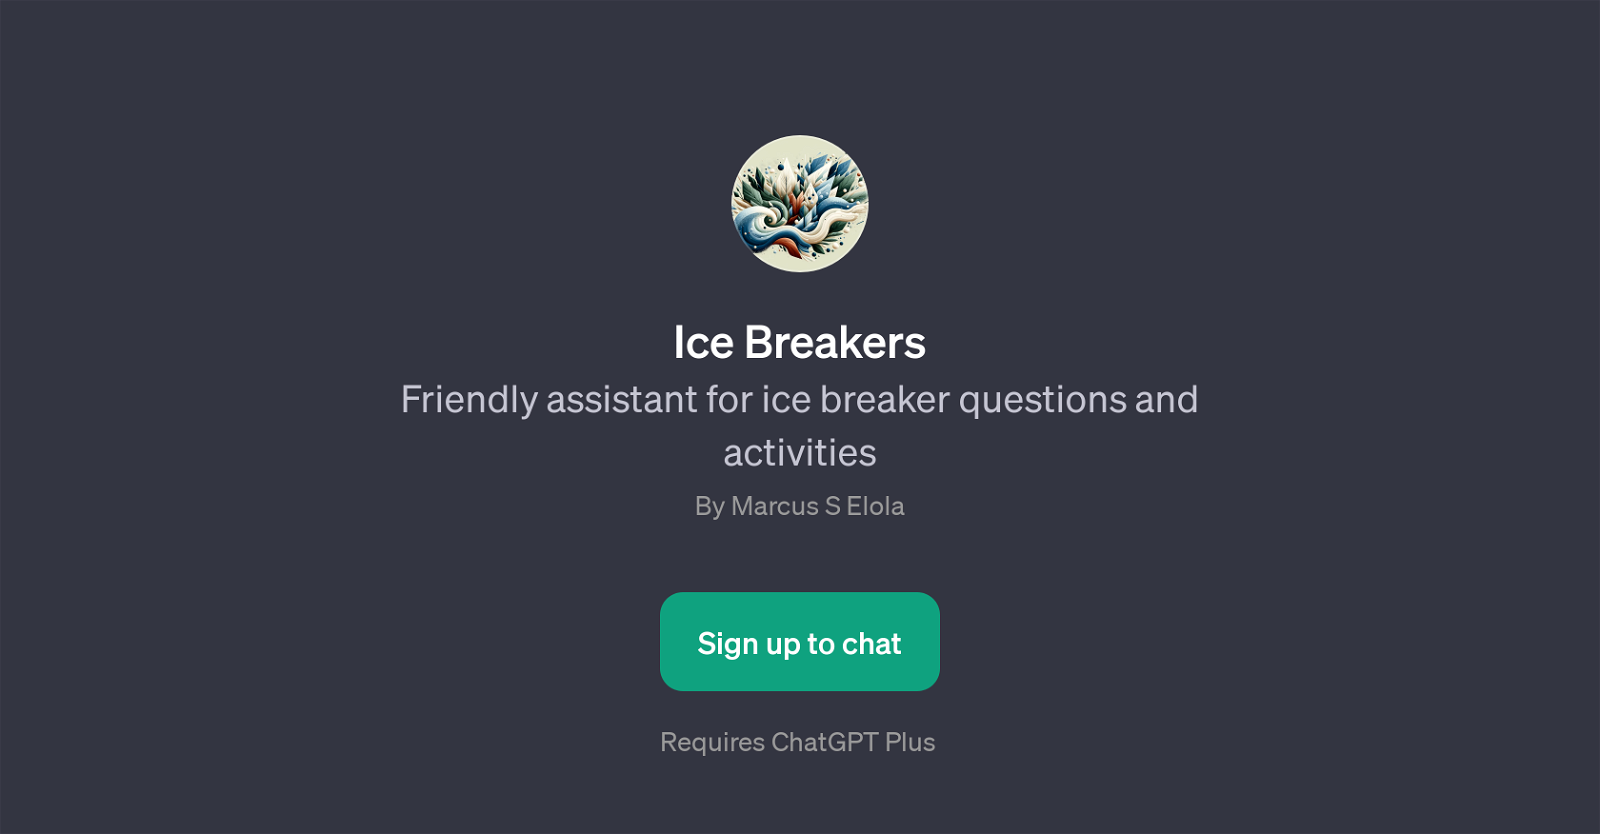 Ice Breakers website